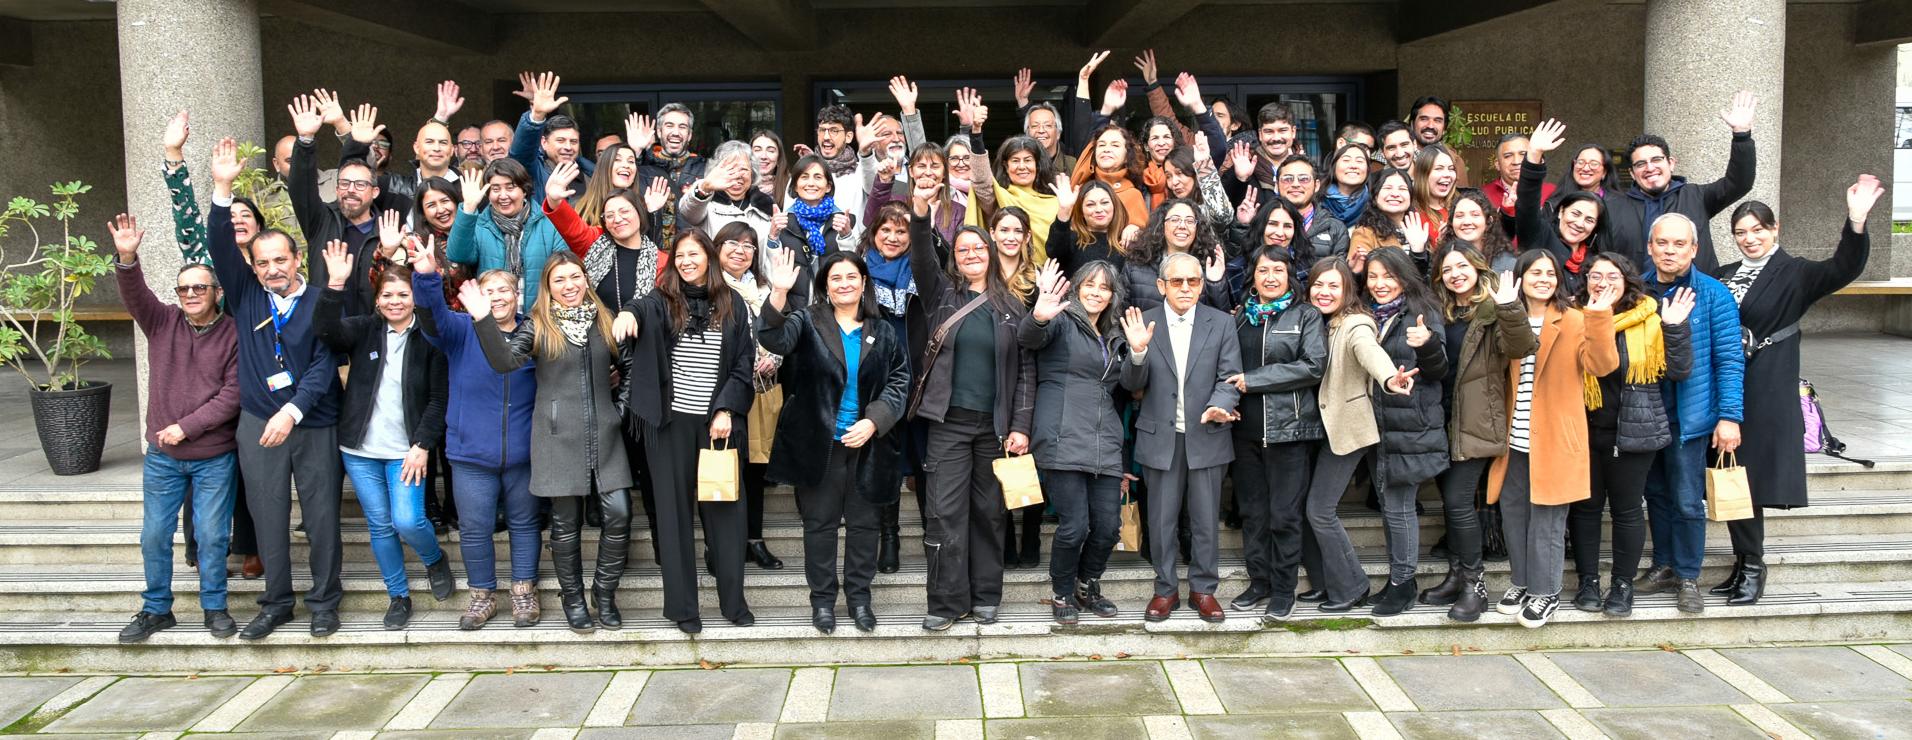 Escuela de Salud Pública de la Universidad de Chile celebró 81 años